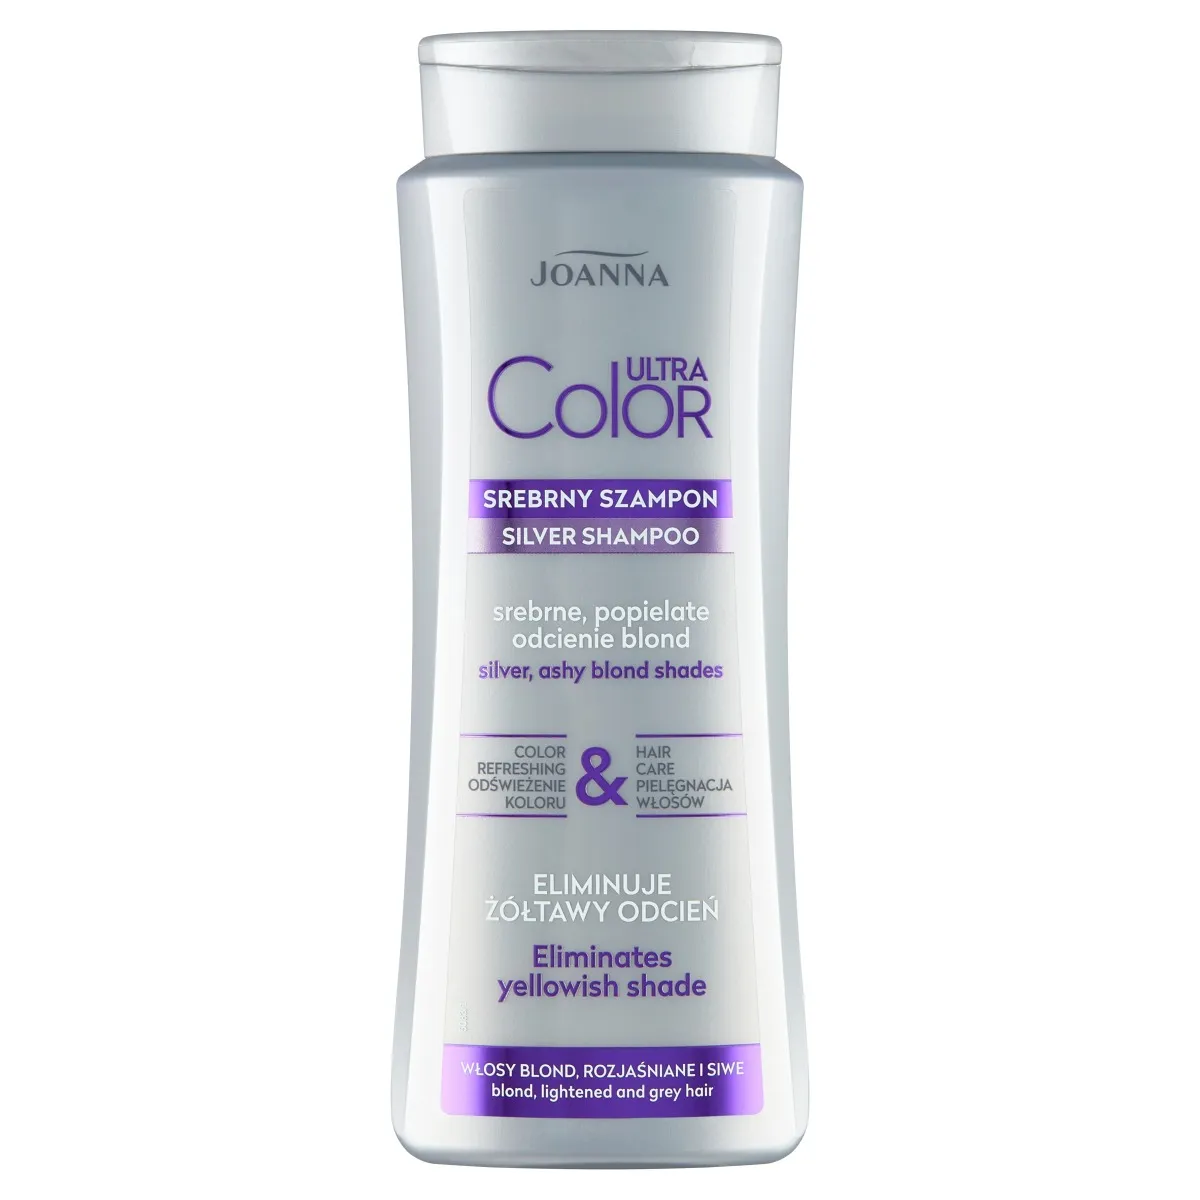 Joanna Ultra Color srebrny szampon, srebrne, popielate odcienie blond, 400 ml 